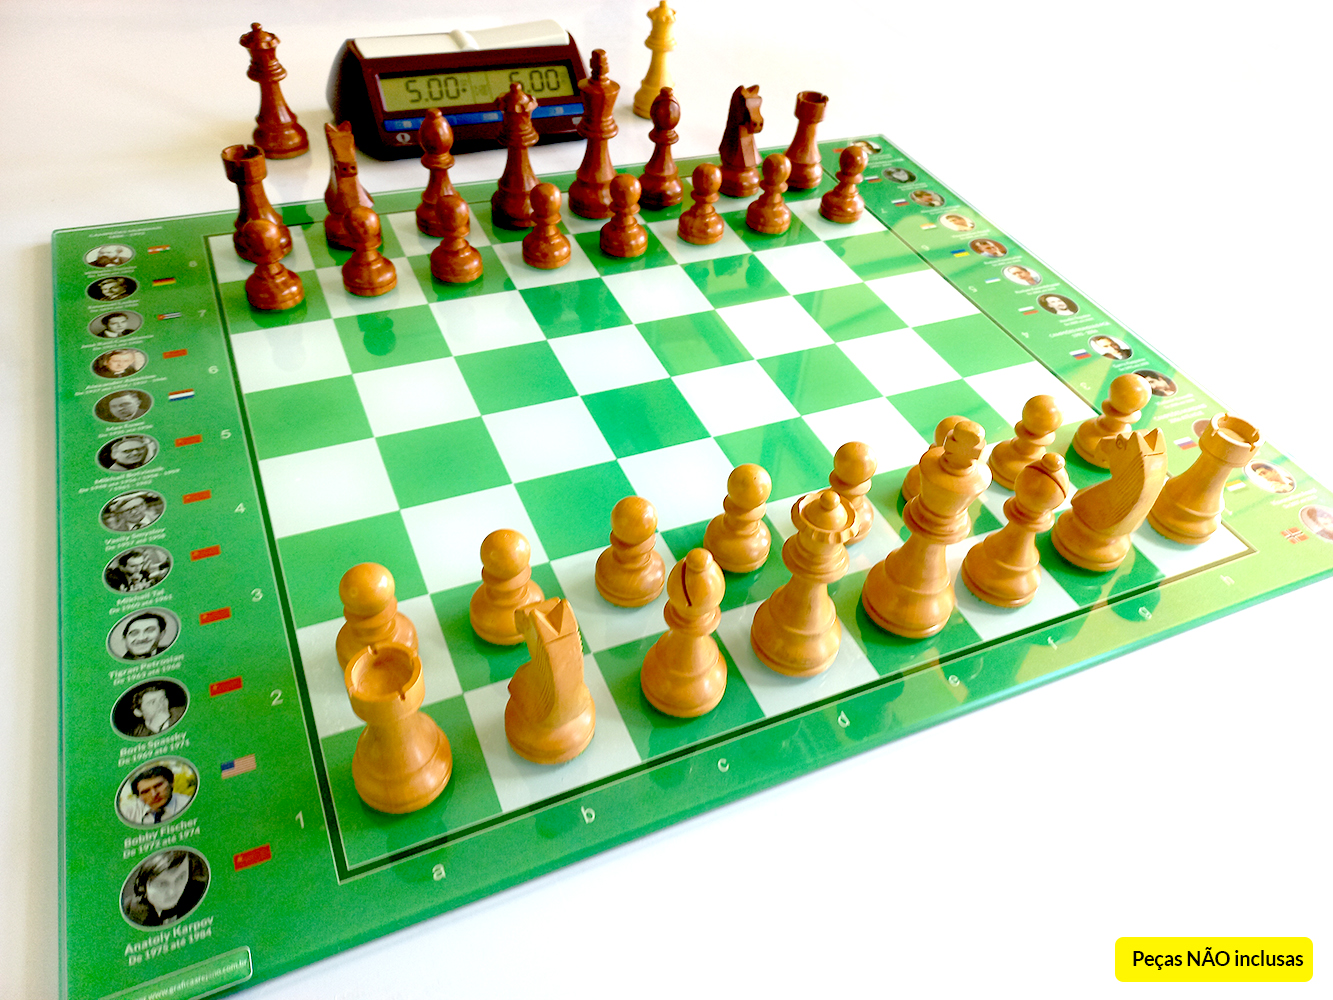 Livro de campeão de xadrez avalia inteligência artificial - 10/06